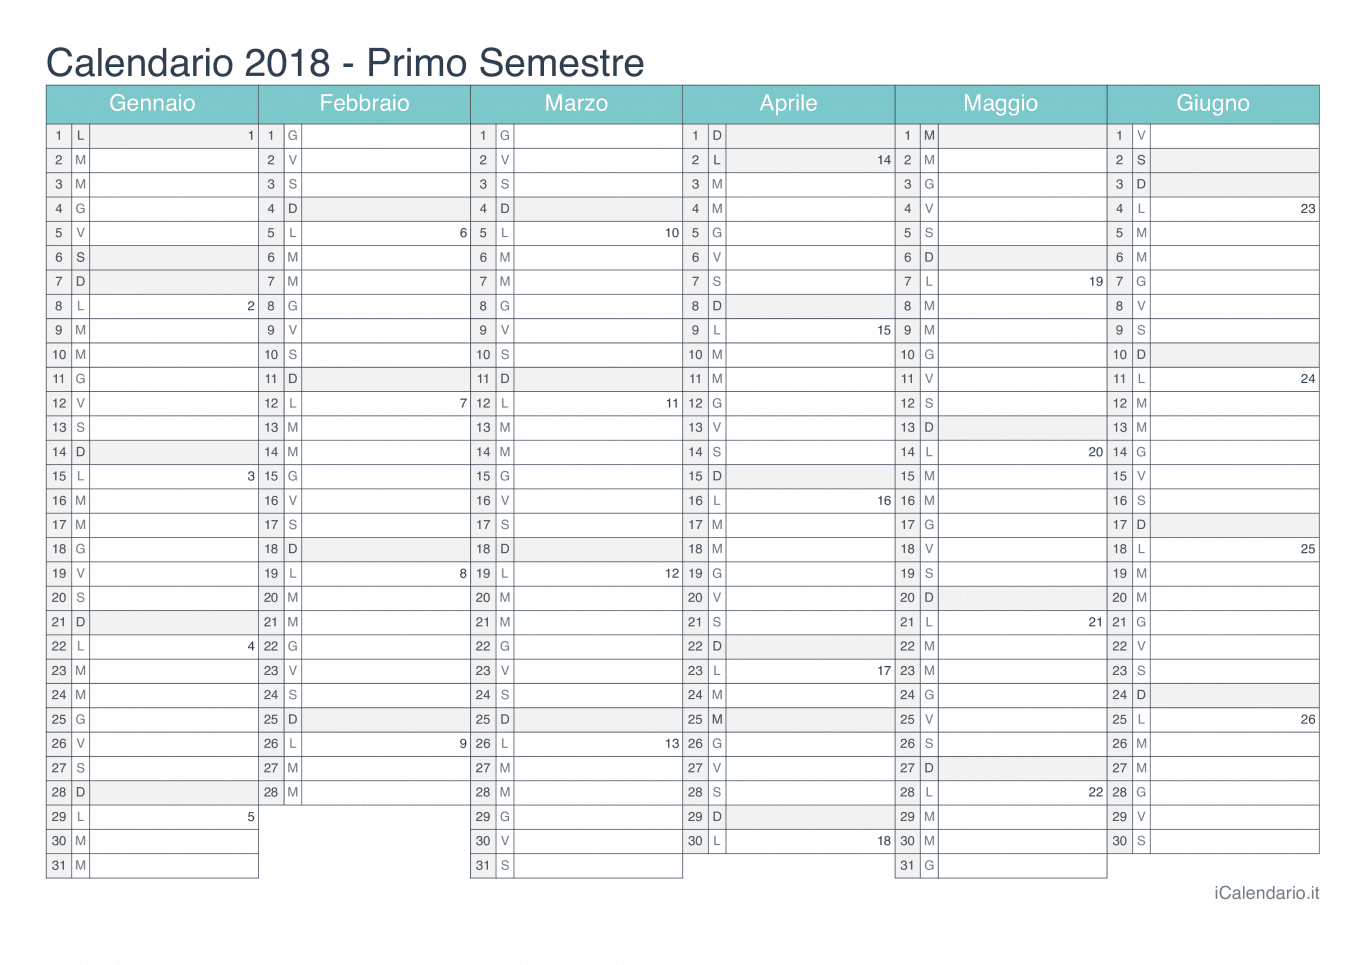 Calendario semestrale con numeri delle settimane 2018 - Turchese